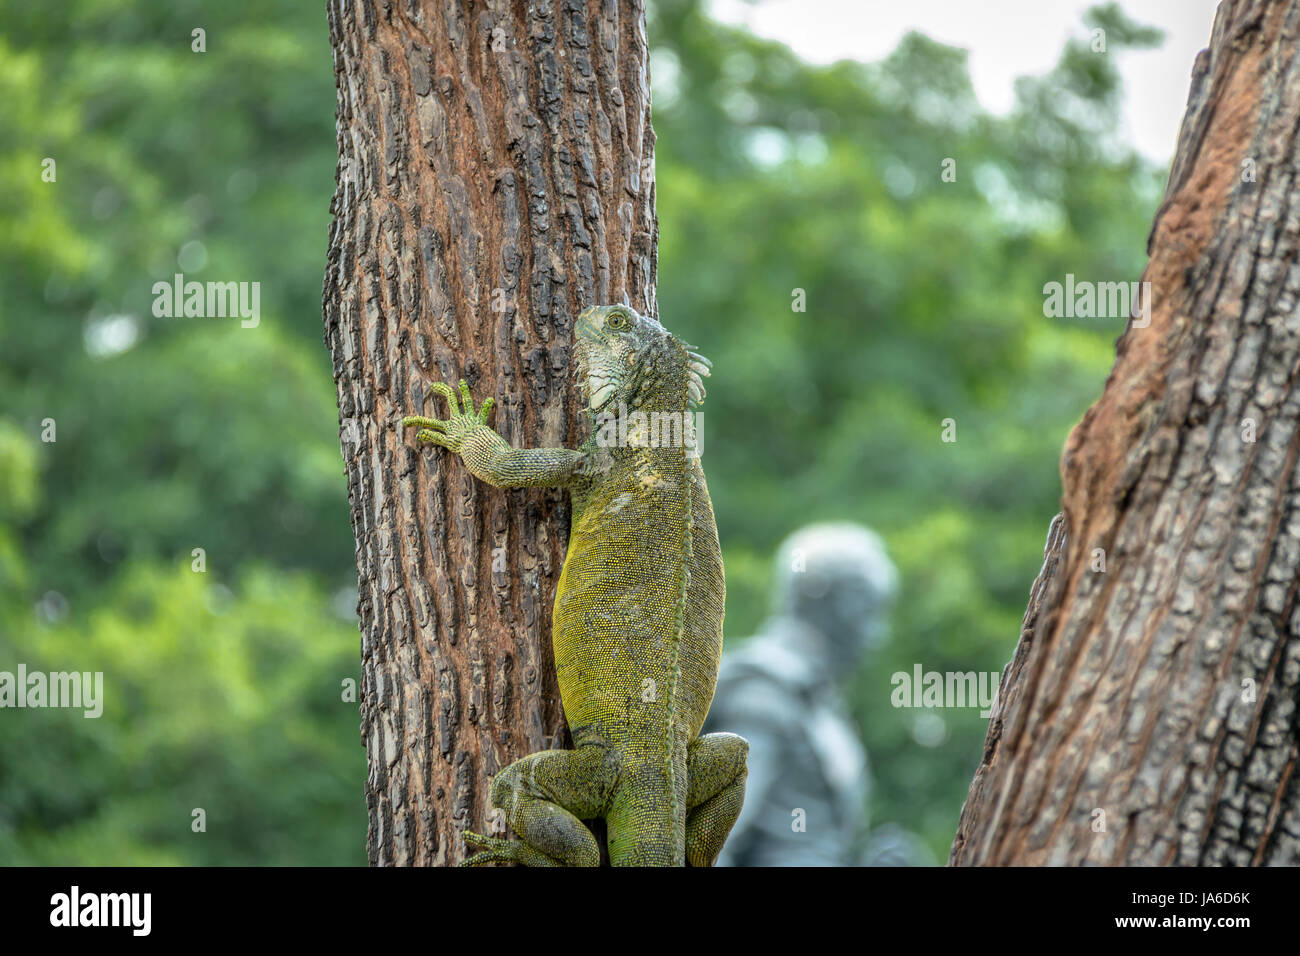 Iguana escalade un arbre au parc Seminario (Parc des Iguanes) - Guayaquil, Équateur Banque D'Images